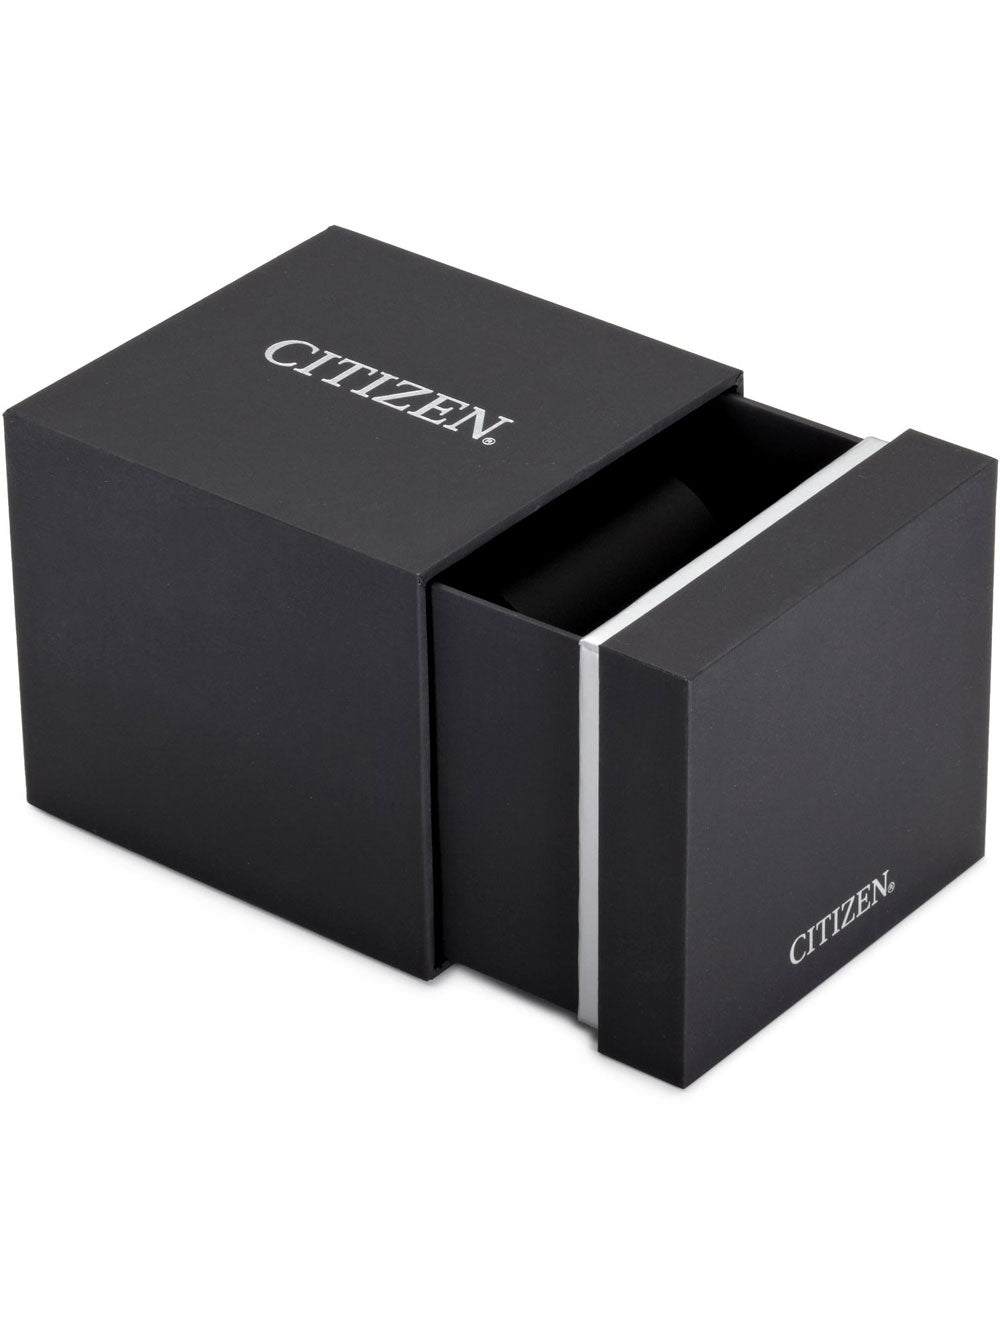 Citizen Eco-Drive Gents BM7407-81H 40mm 5ATM